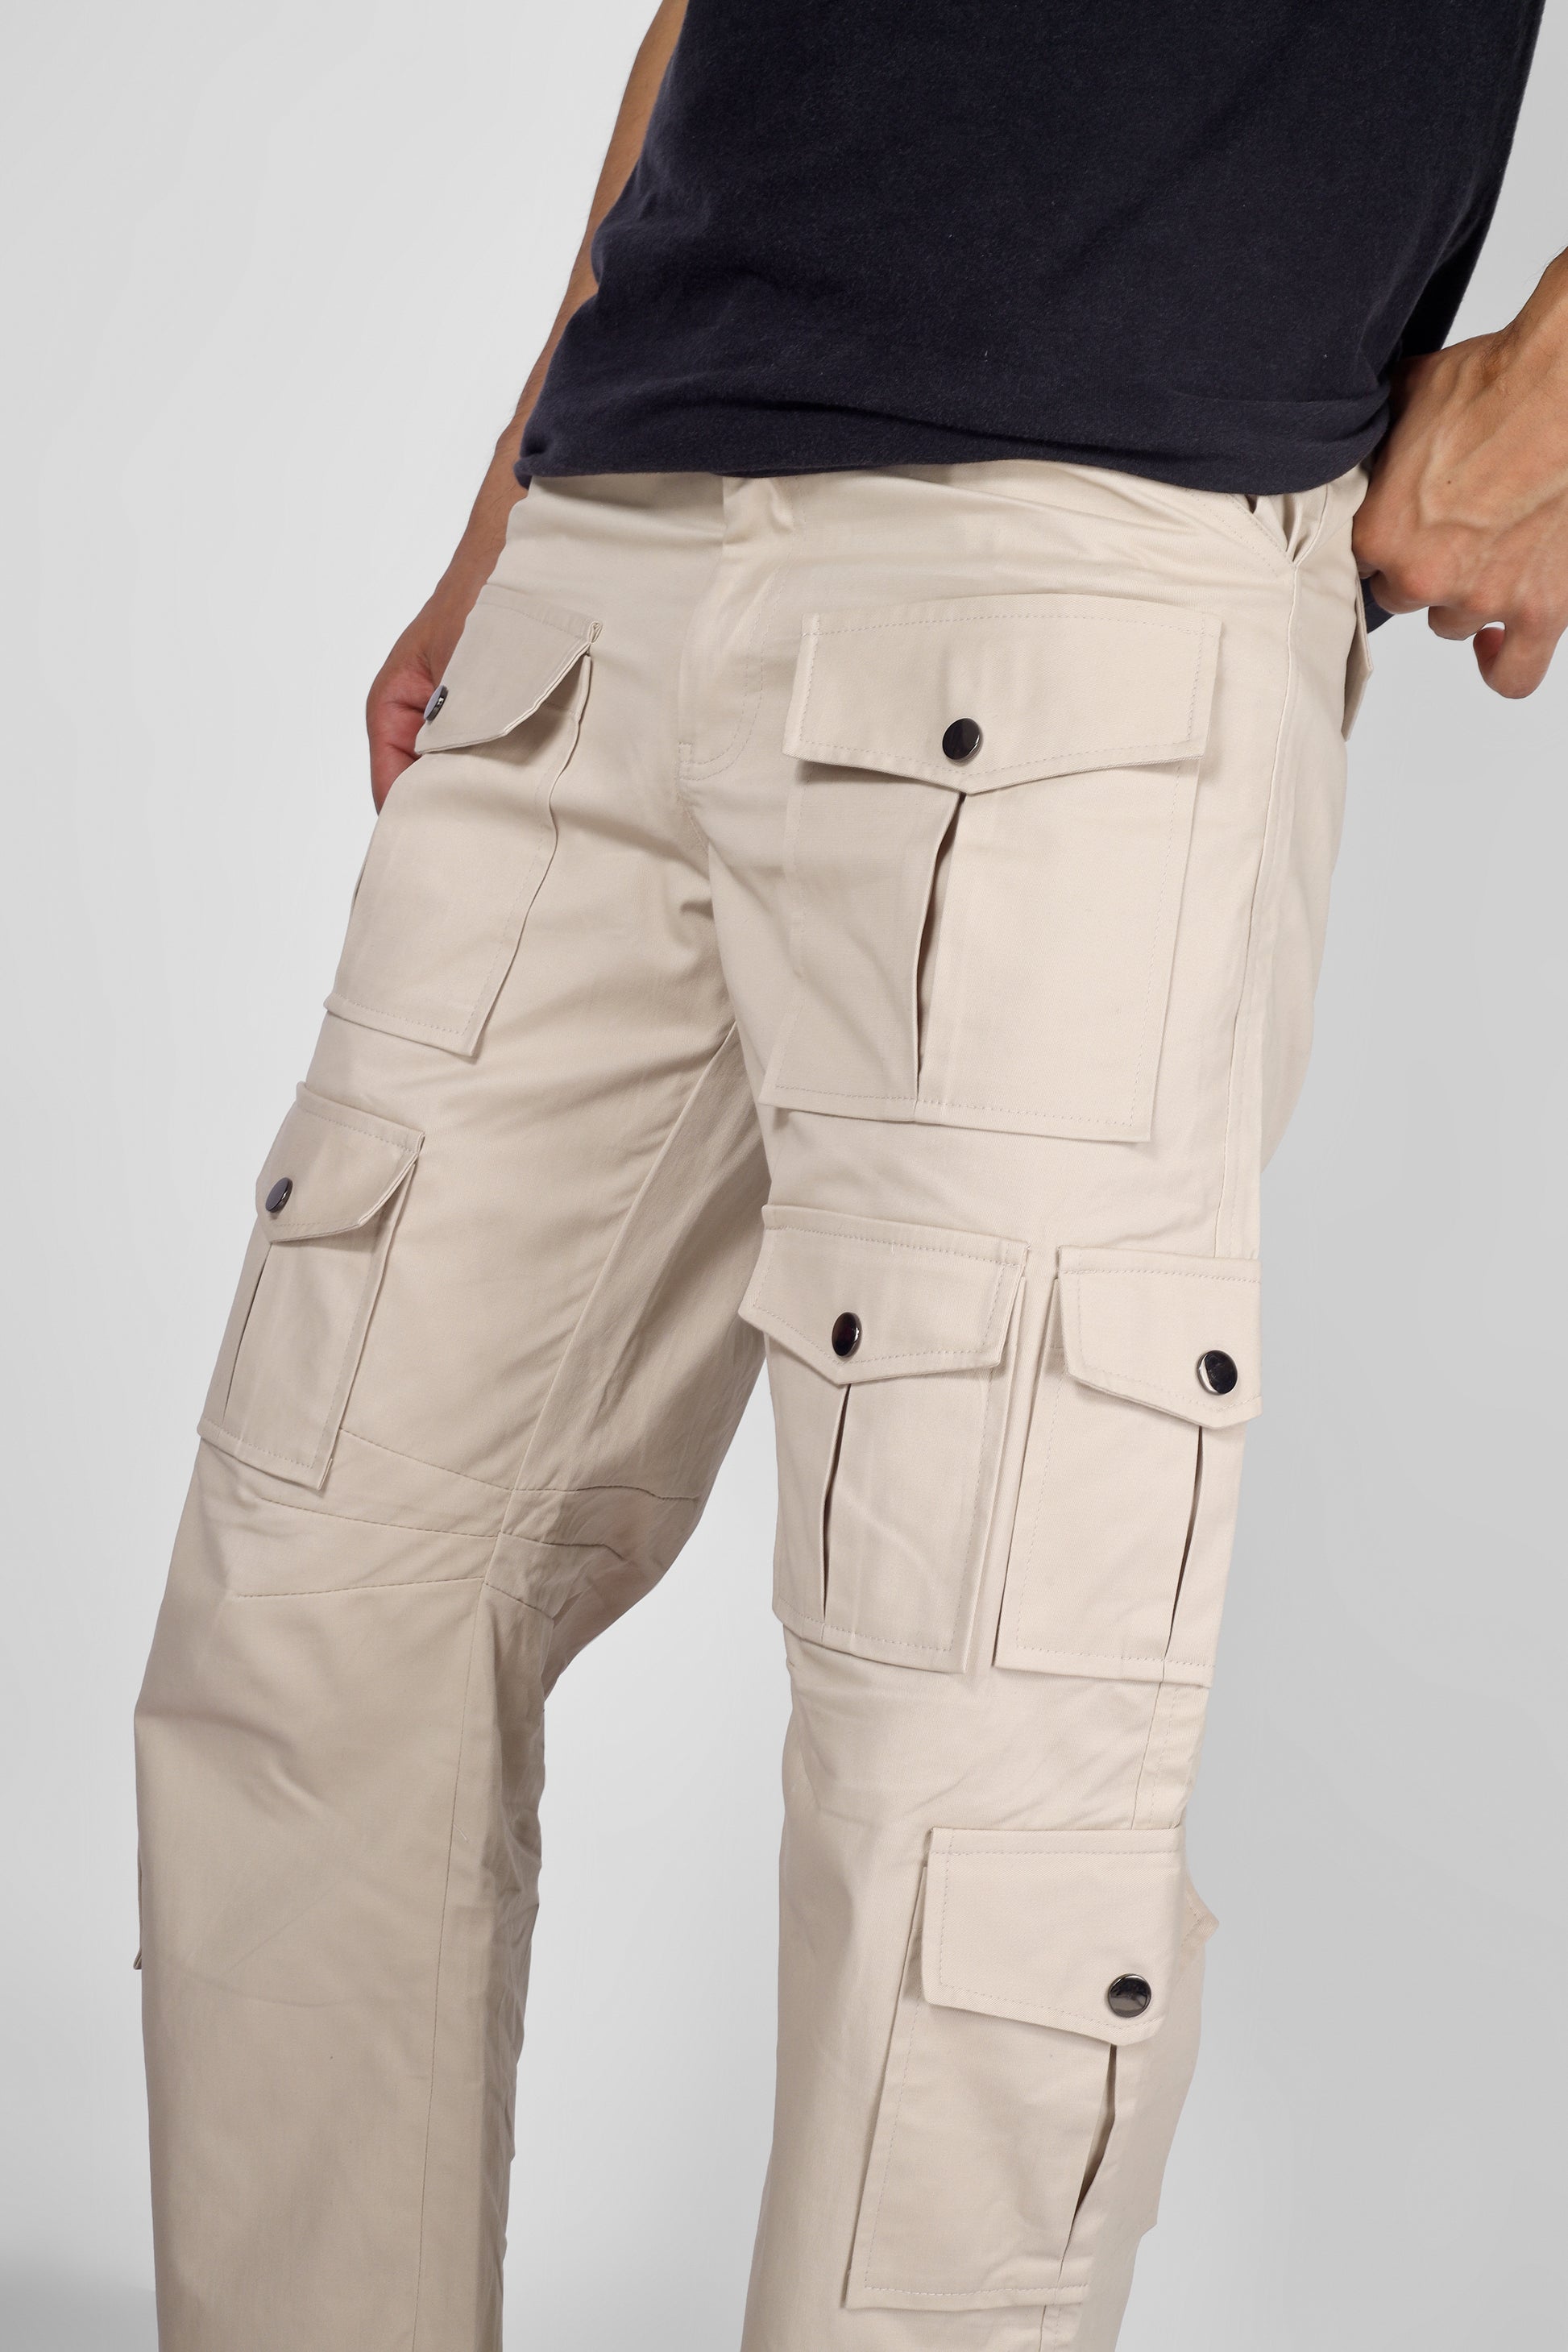 Arcadia White 14 Pocket Cargo pants - Wearduds